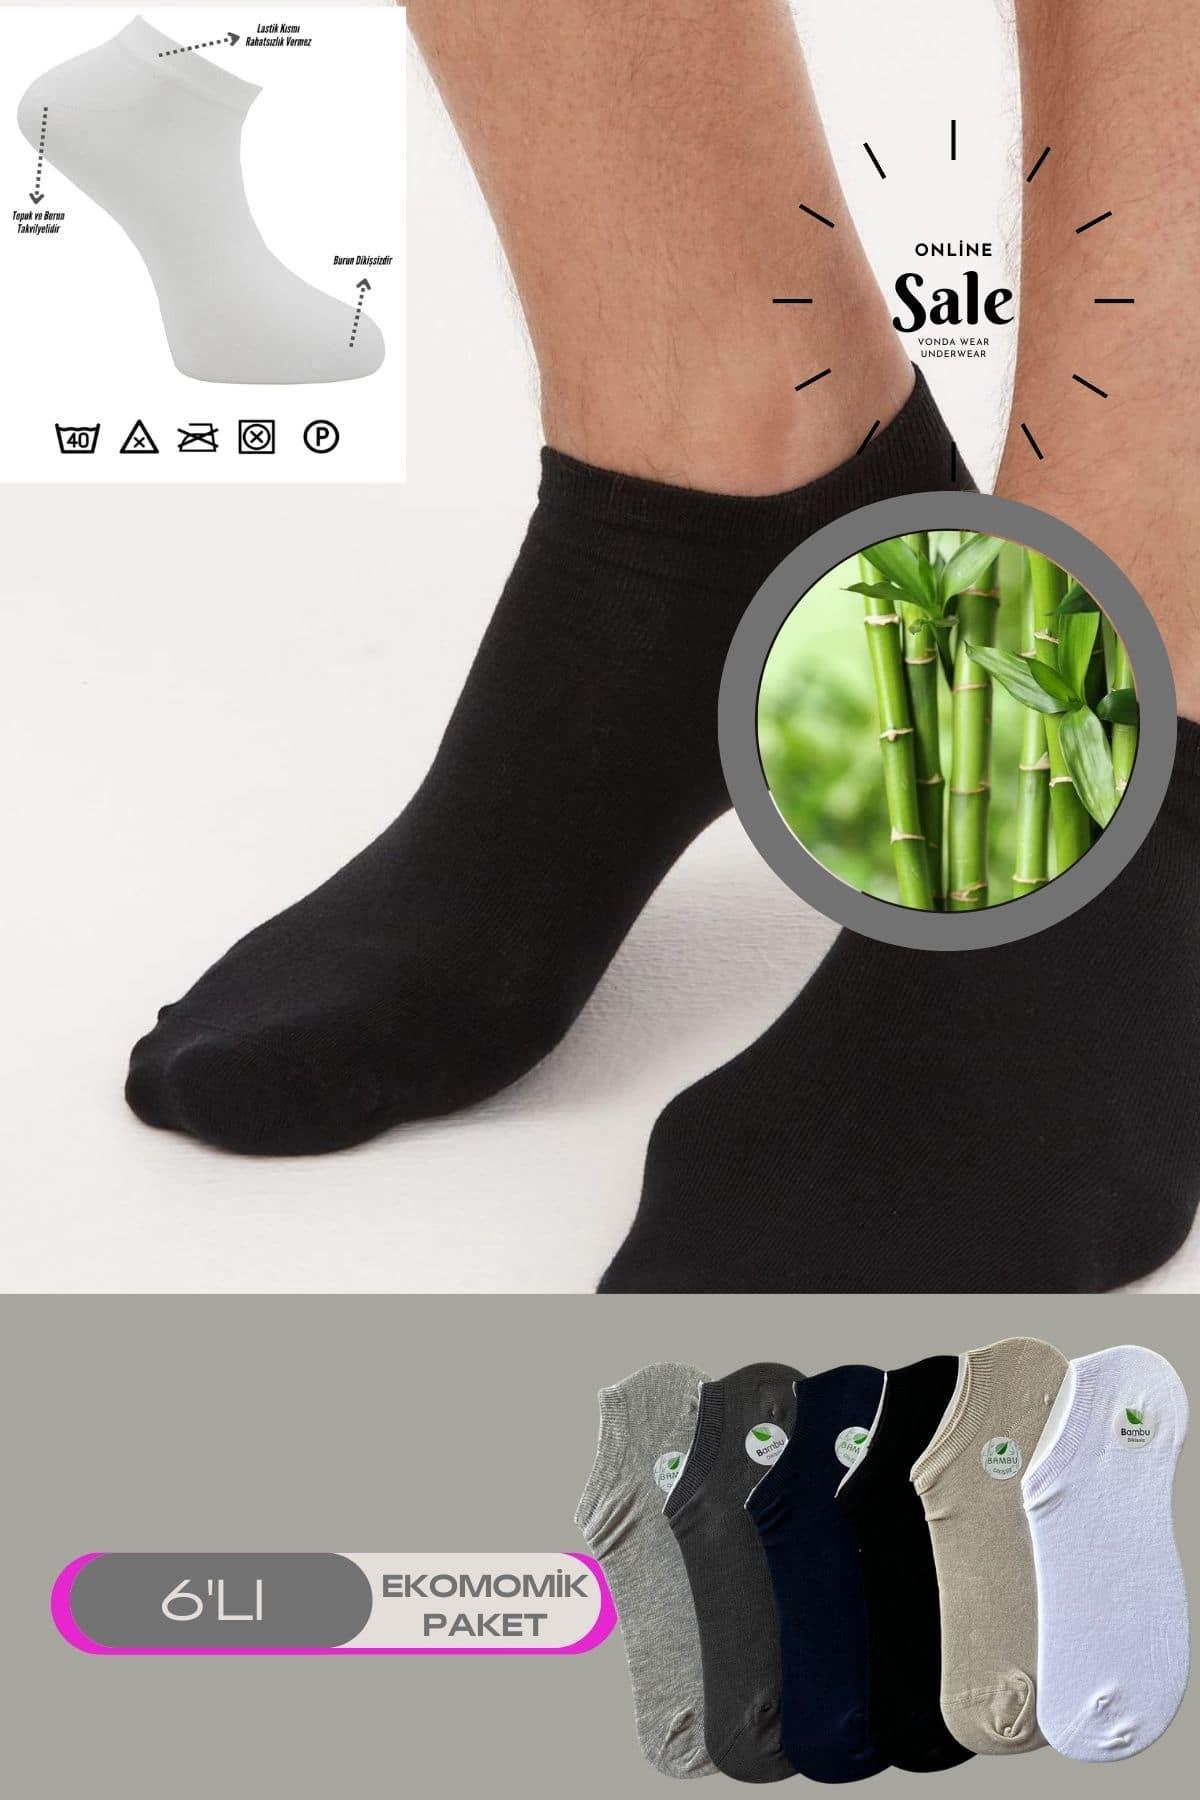 Rekli 6 lı Erkek Bambu Snekars Topuk Burun Dikişsiz Takviyeli Çorap 2011-ÇokRekli-6lı